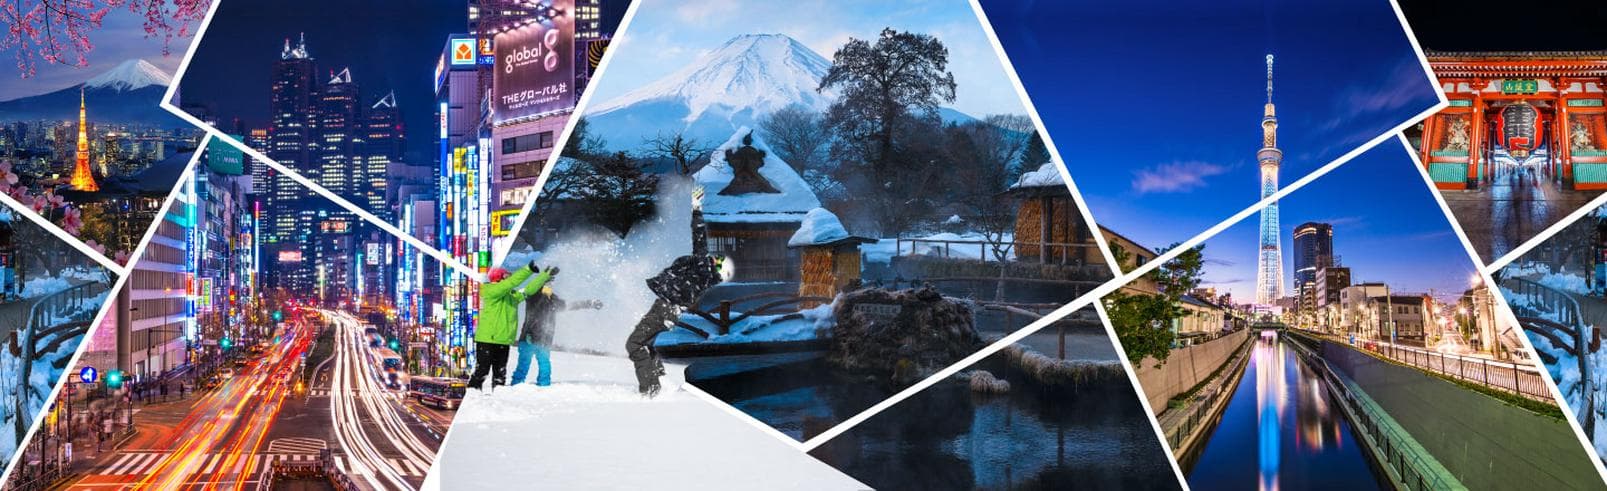 ทัวร์ญี่ปุ่น โตเกียว 5วัน 3คืน หมู่บ้านน้ำใส โอชิโนะฮัคไก เล่นสกี แช่ออนเซ็น บุฟเฟ่ต์ขาปูยักษ์ บินTZ